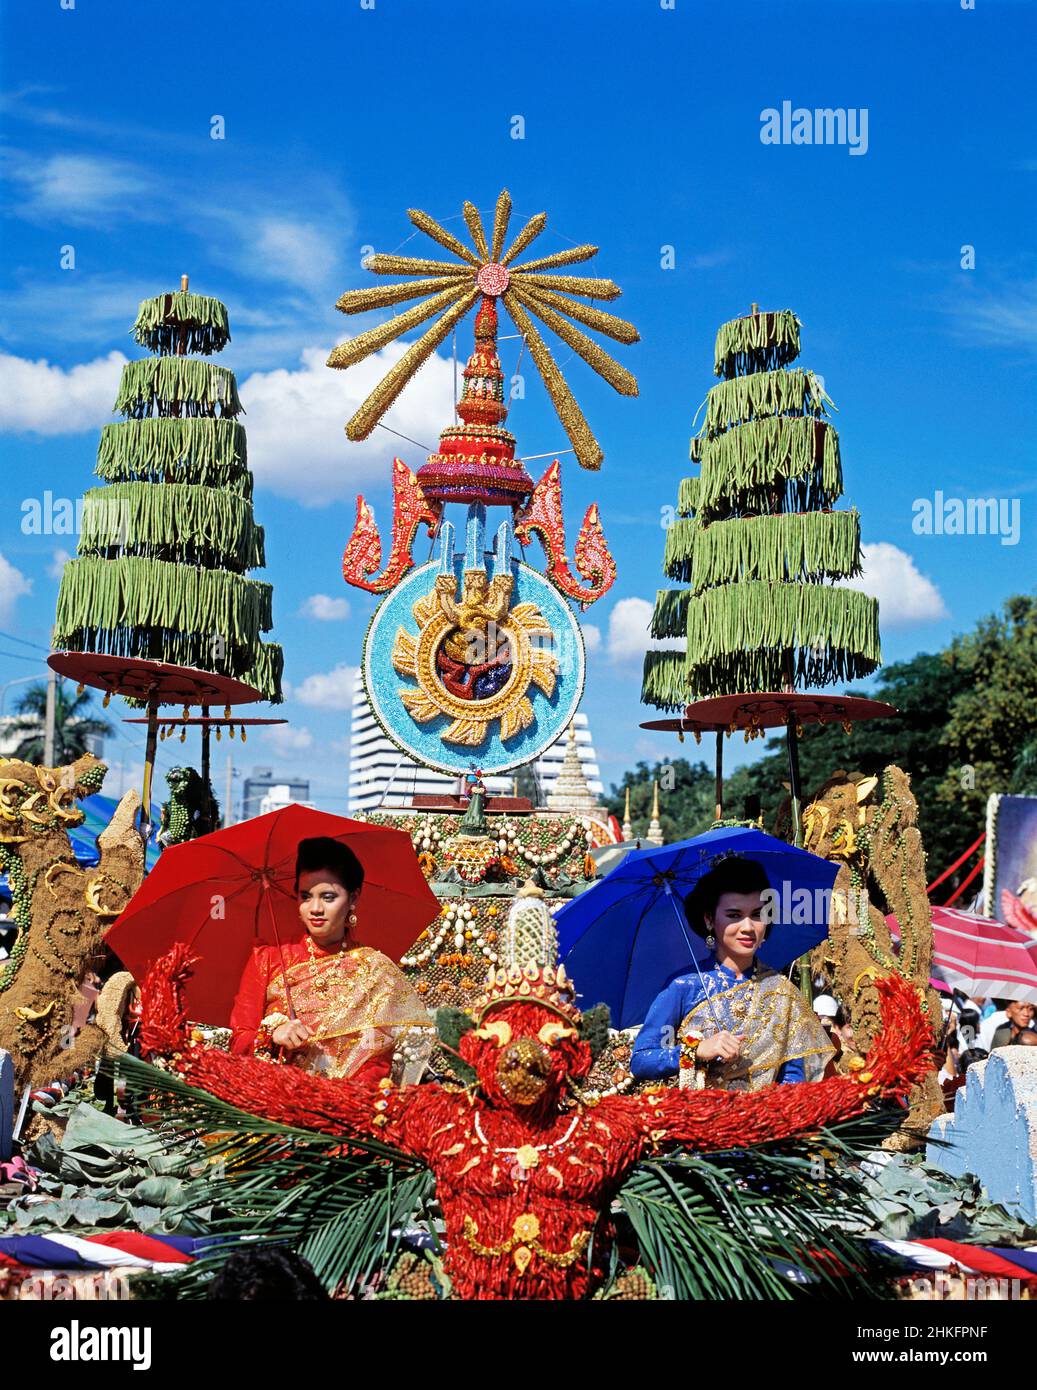 Thailand. Bangkok. Blumenfest. Frauen mit Sonnenschirmen reiten auf dem Festwagen. Stockfoto